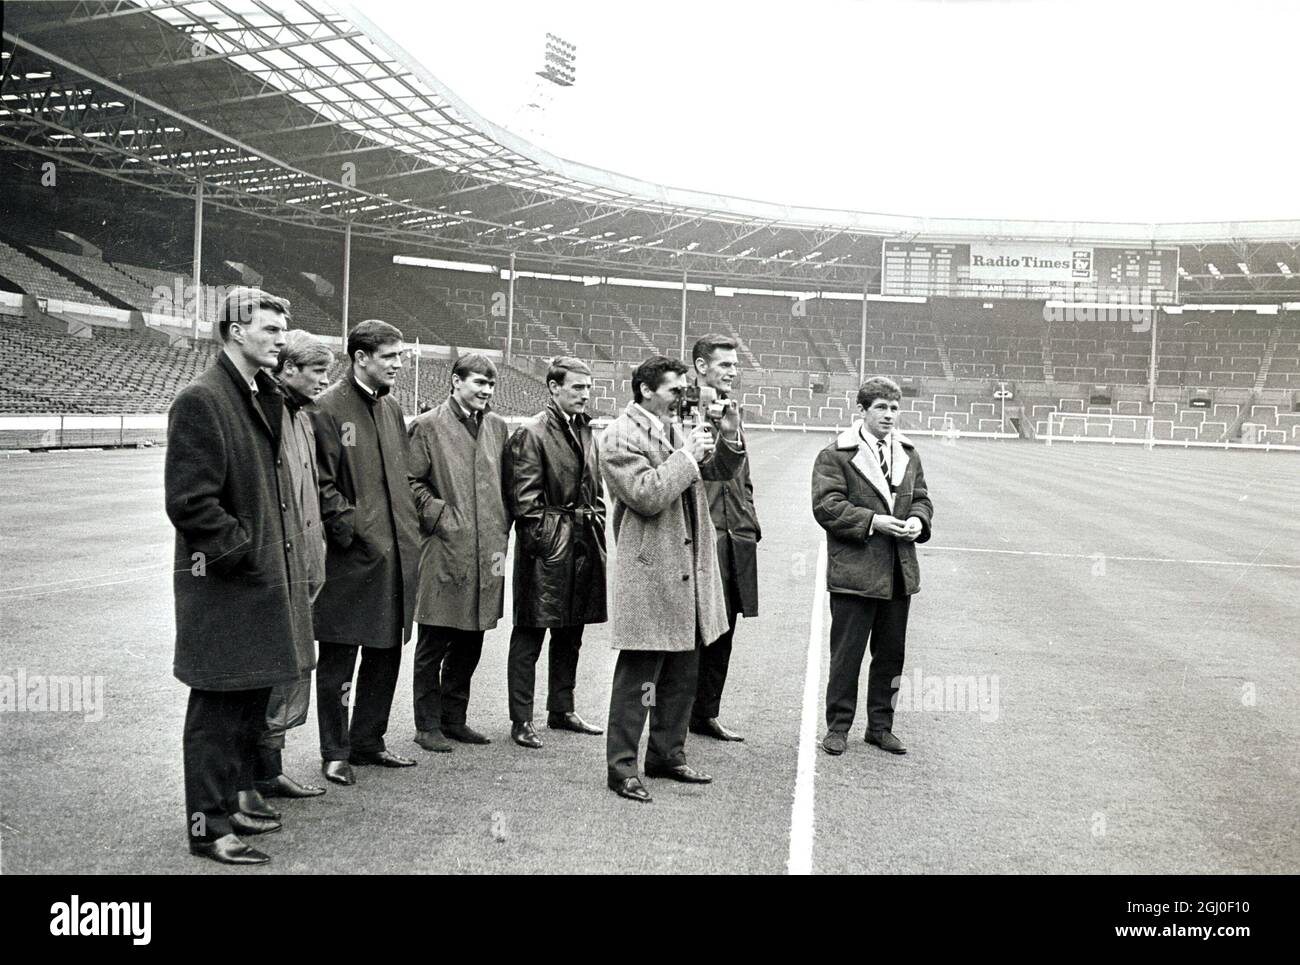 Der Leeds-United-Spieler Don Weston wird bei einem Film von Wembley mitgeführt, während seine Teamkollegen sehen. Die Spieler aus Leeds waren vor dem FA Cup-Finale gegen Liverpool auf Besuch, um das Spielfeld und das Stadion zu vergrößern. April 1965. Stockfoto